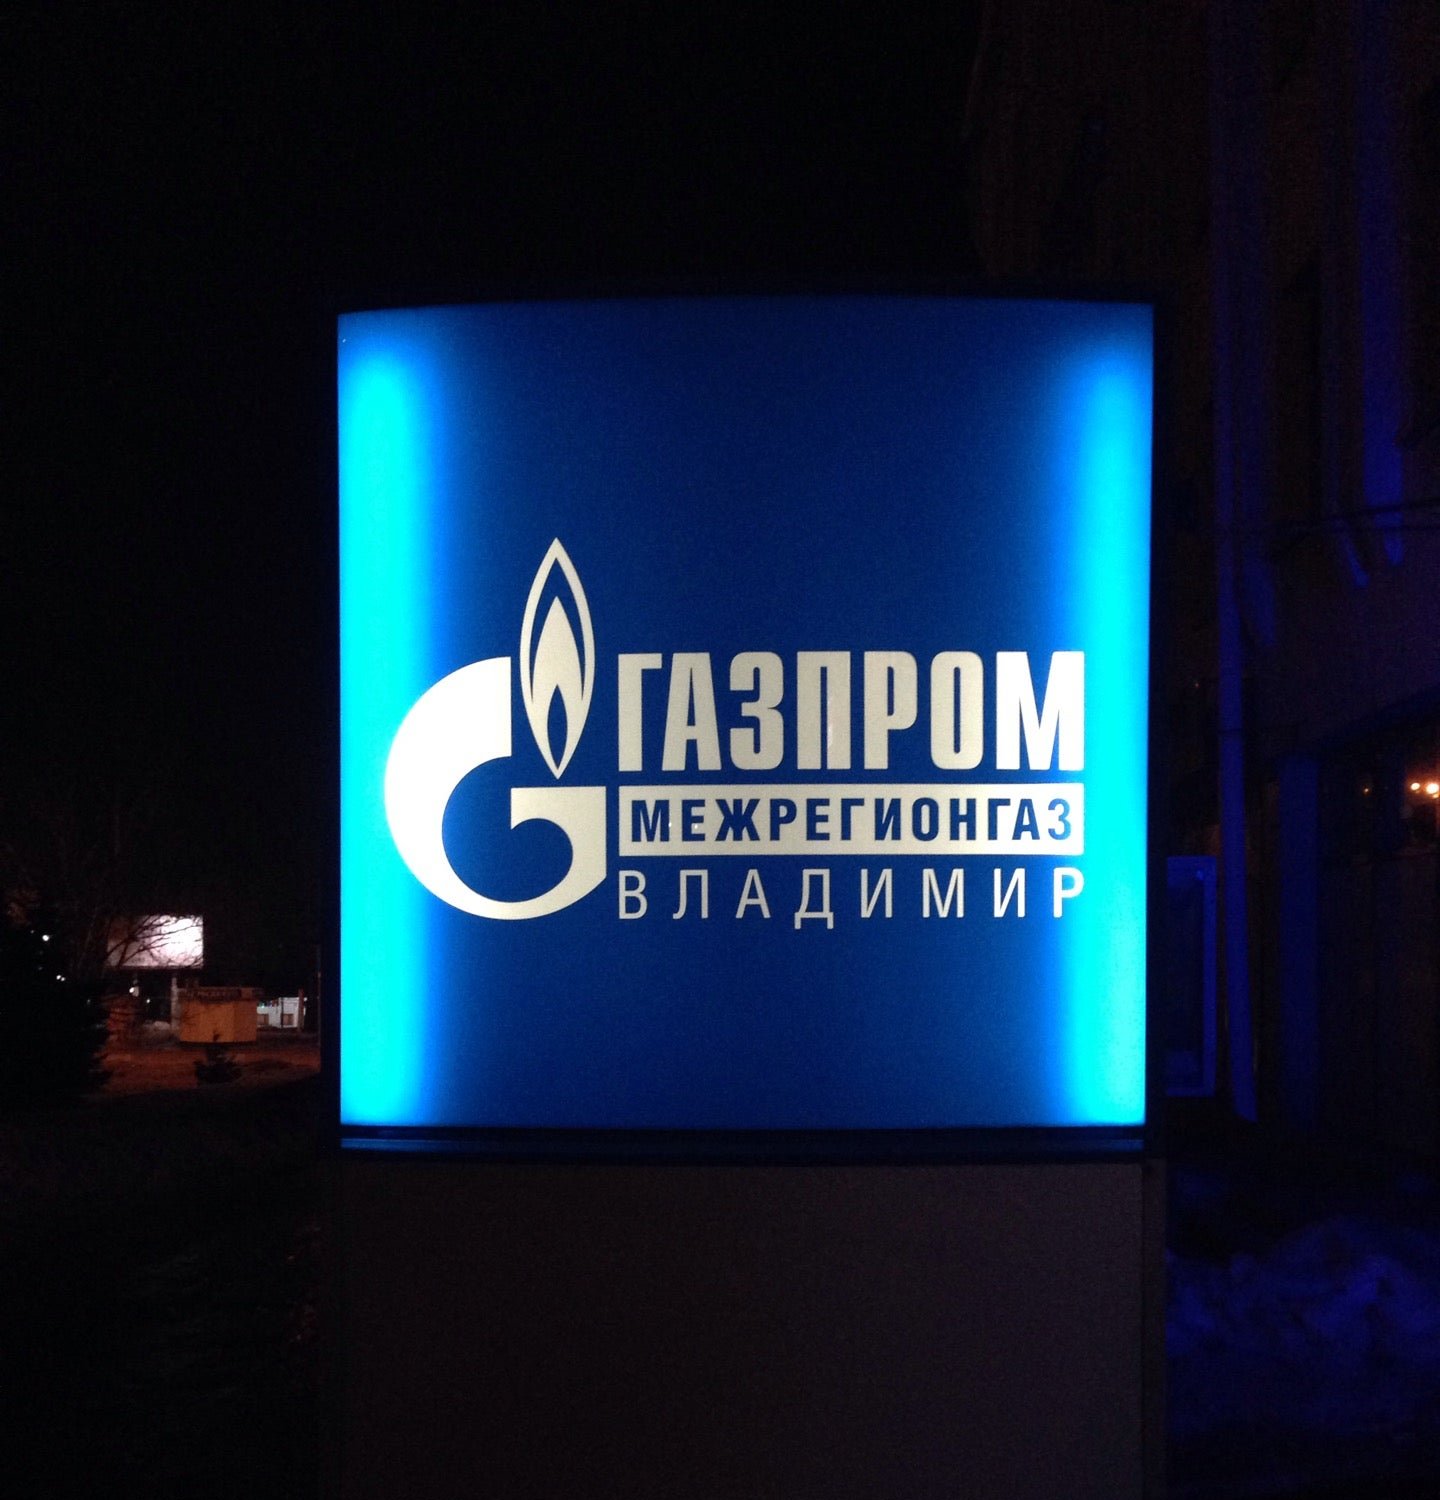 Межрегионгаз краснодар. Газпром межрегионгаз. ООО межрегионгаз. Газпром межрегионгаз Владимир. Газпром логотип.